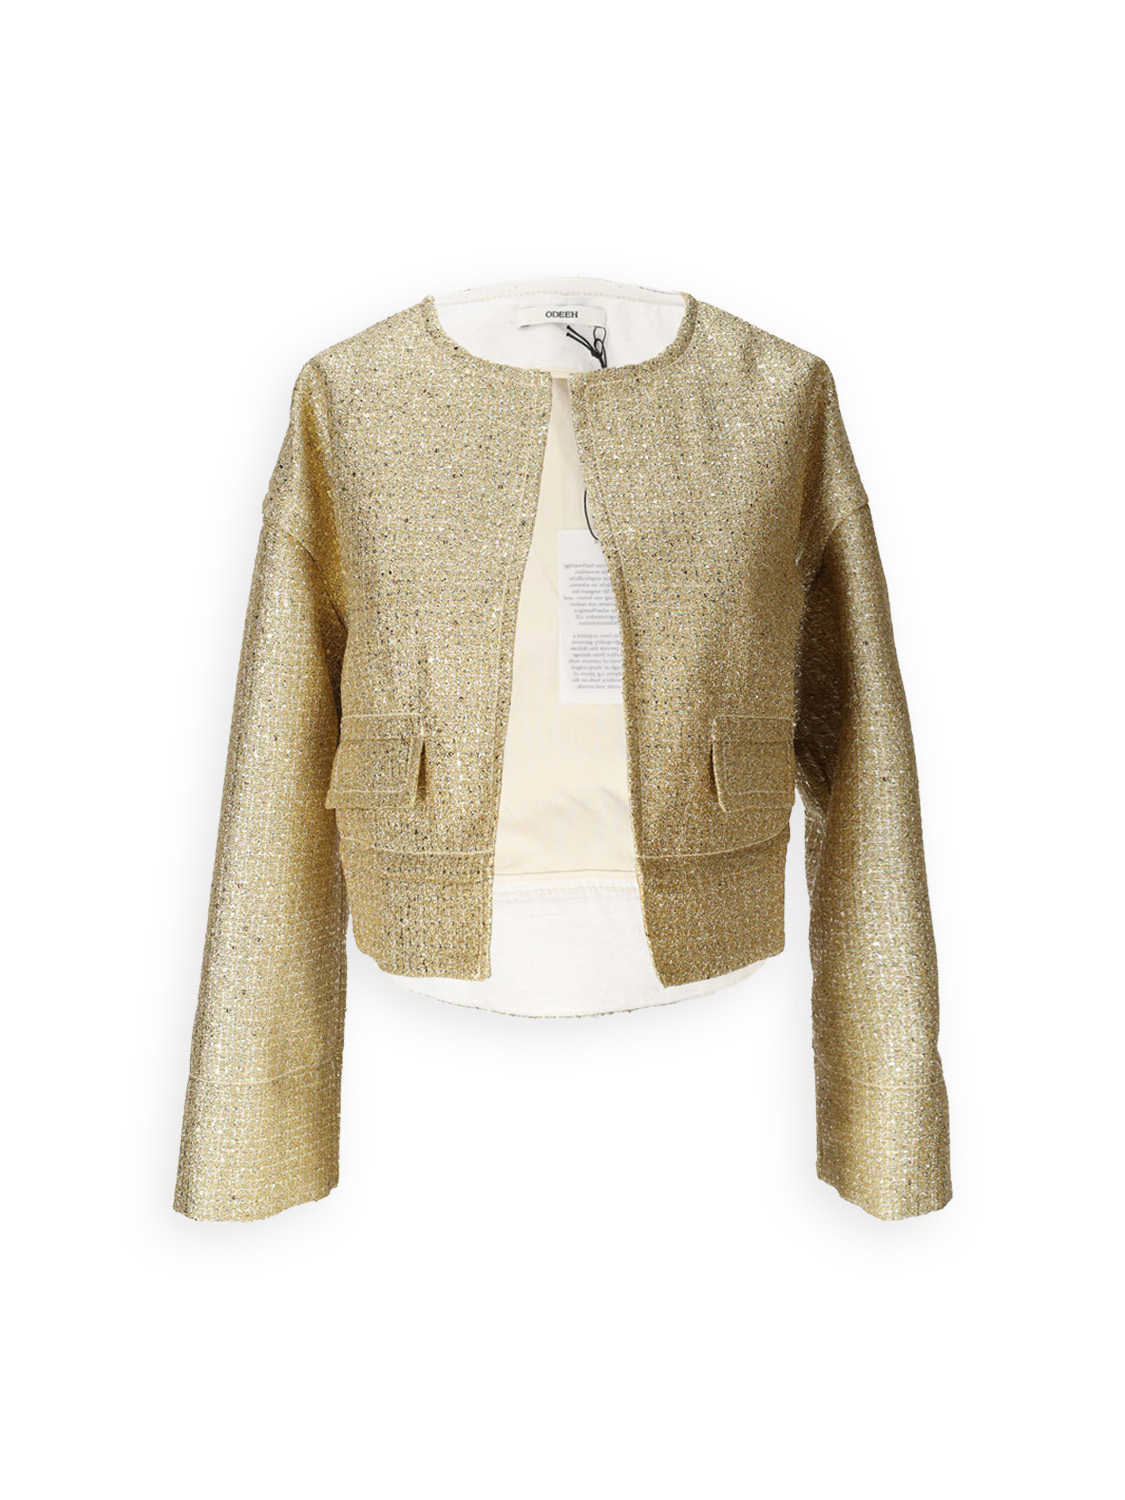 Gold Brocade - Brocade blazer with lurex details 